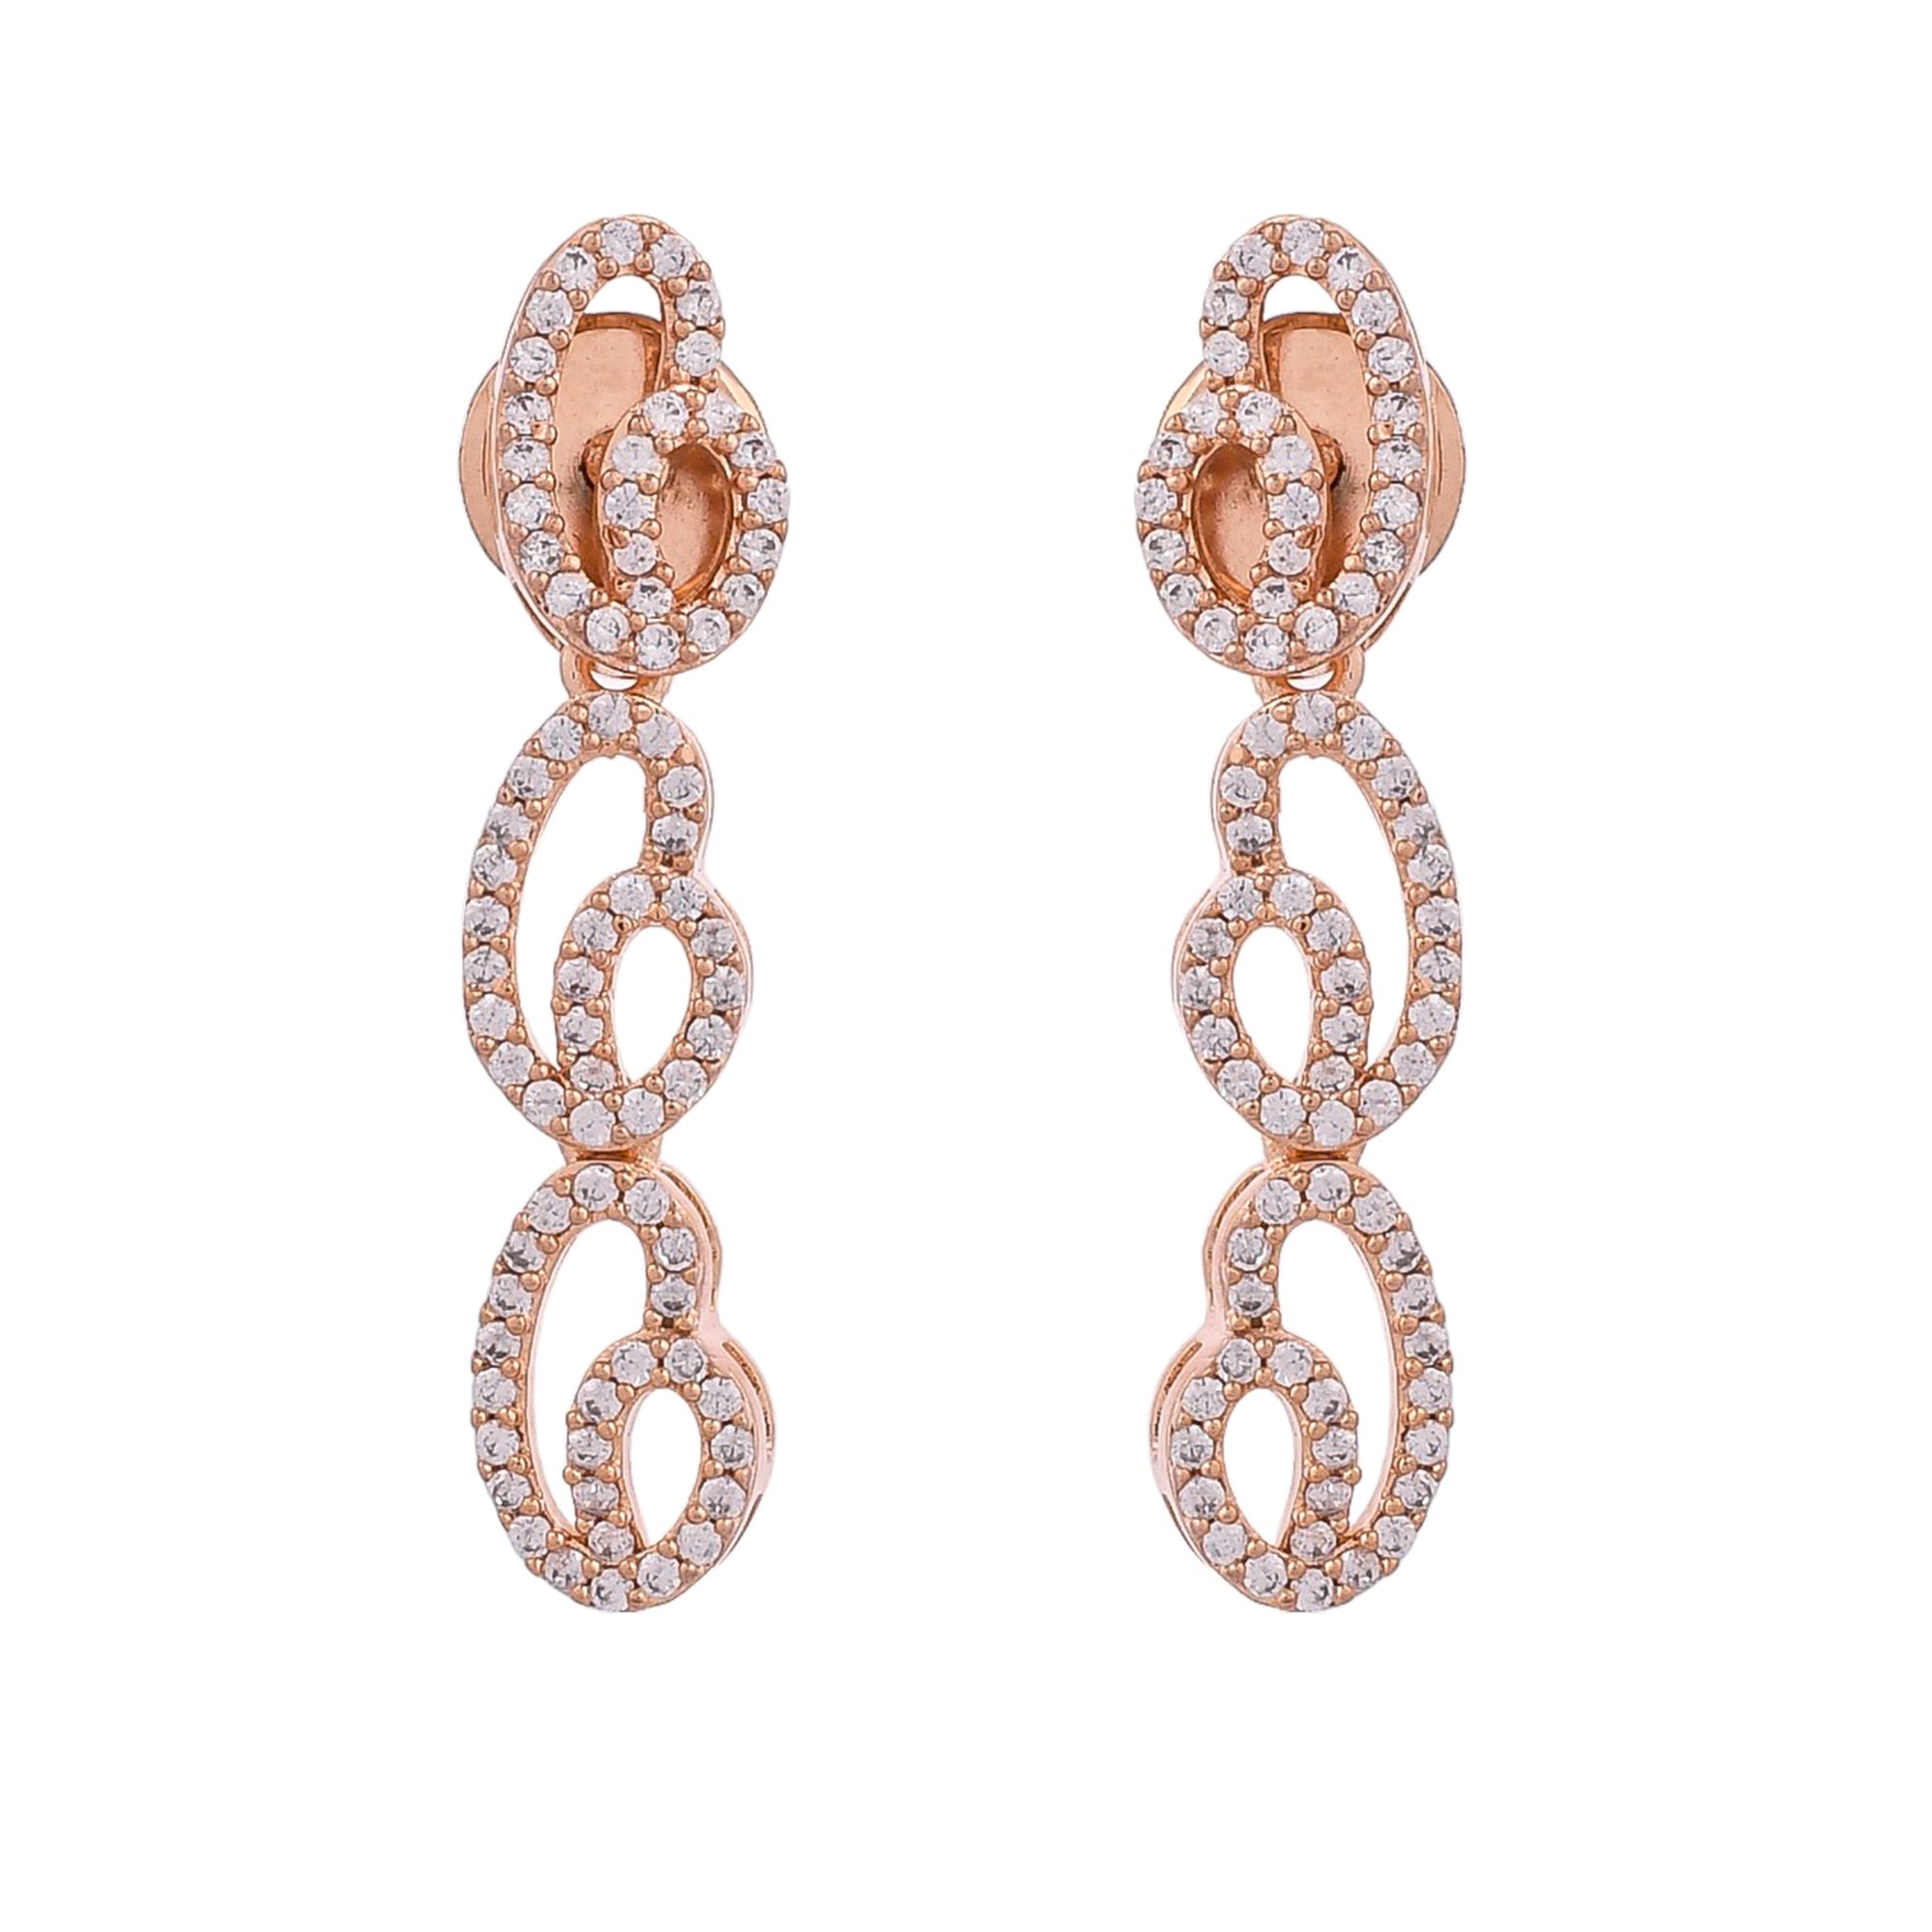 Sparkling Elegance Rose Radiance Curved Necklace Set